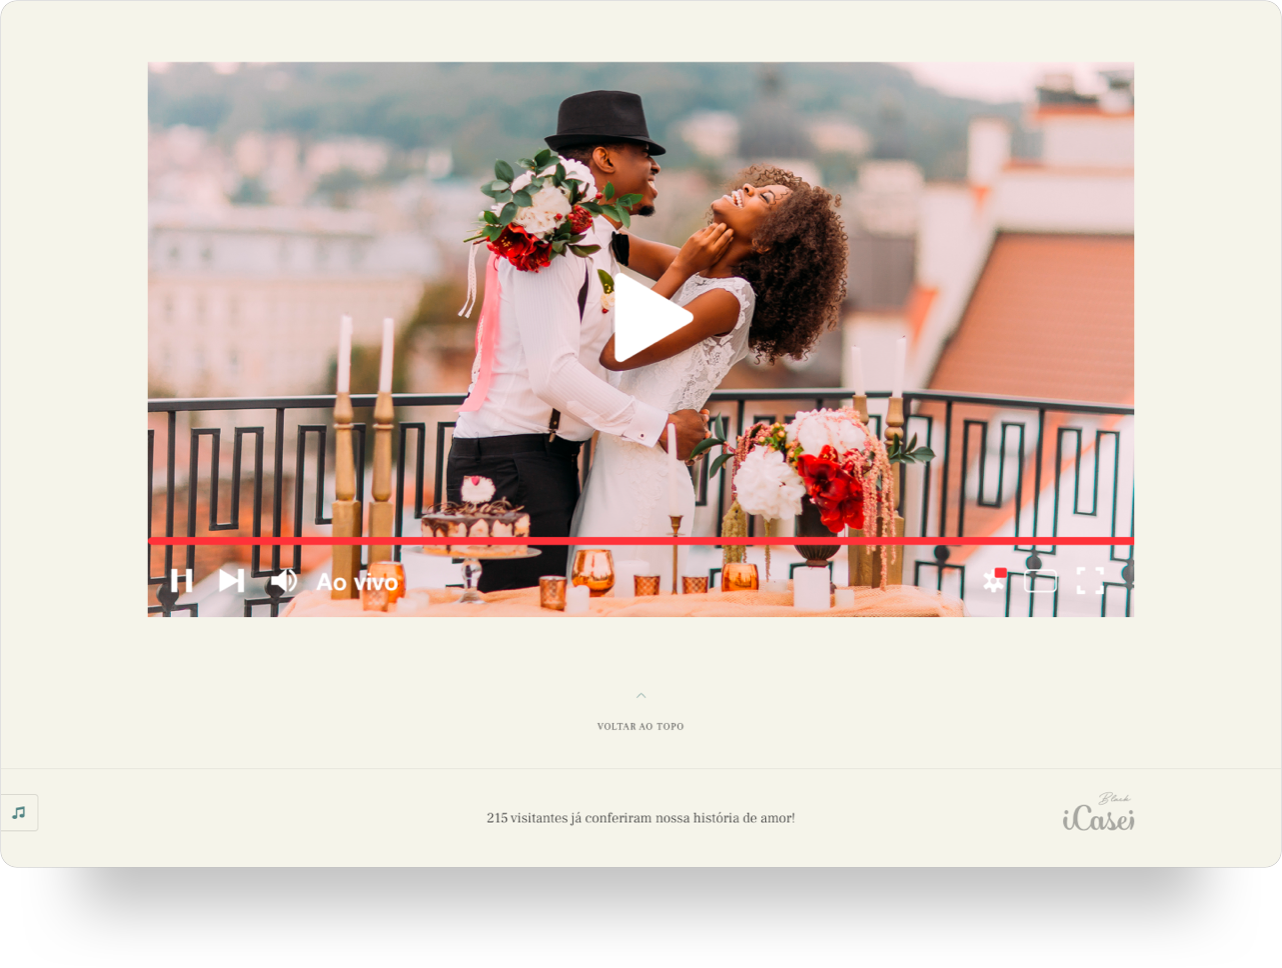 Página inicial do site de casamento iCasei com vídeo.png